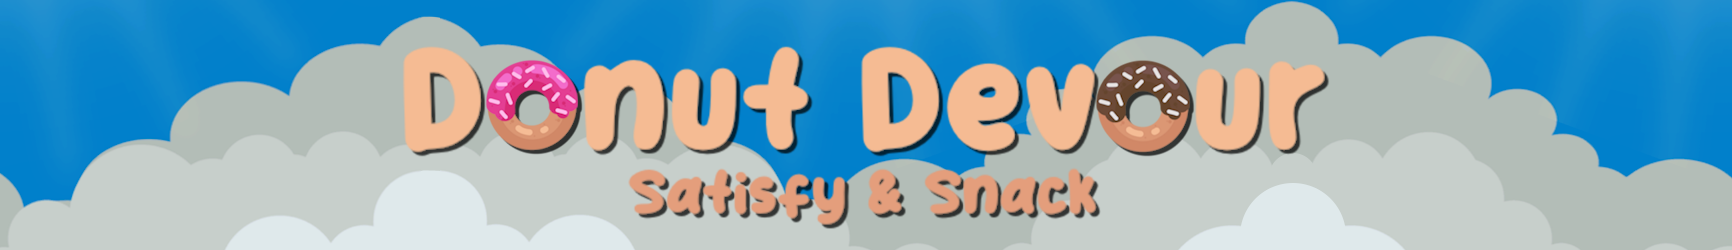 Donut Devour: Satisfy & Snack